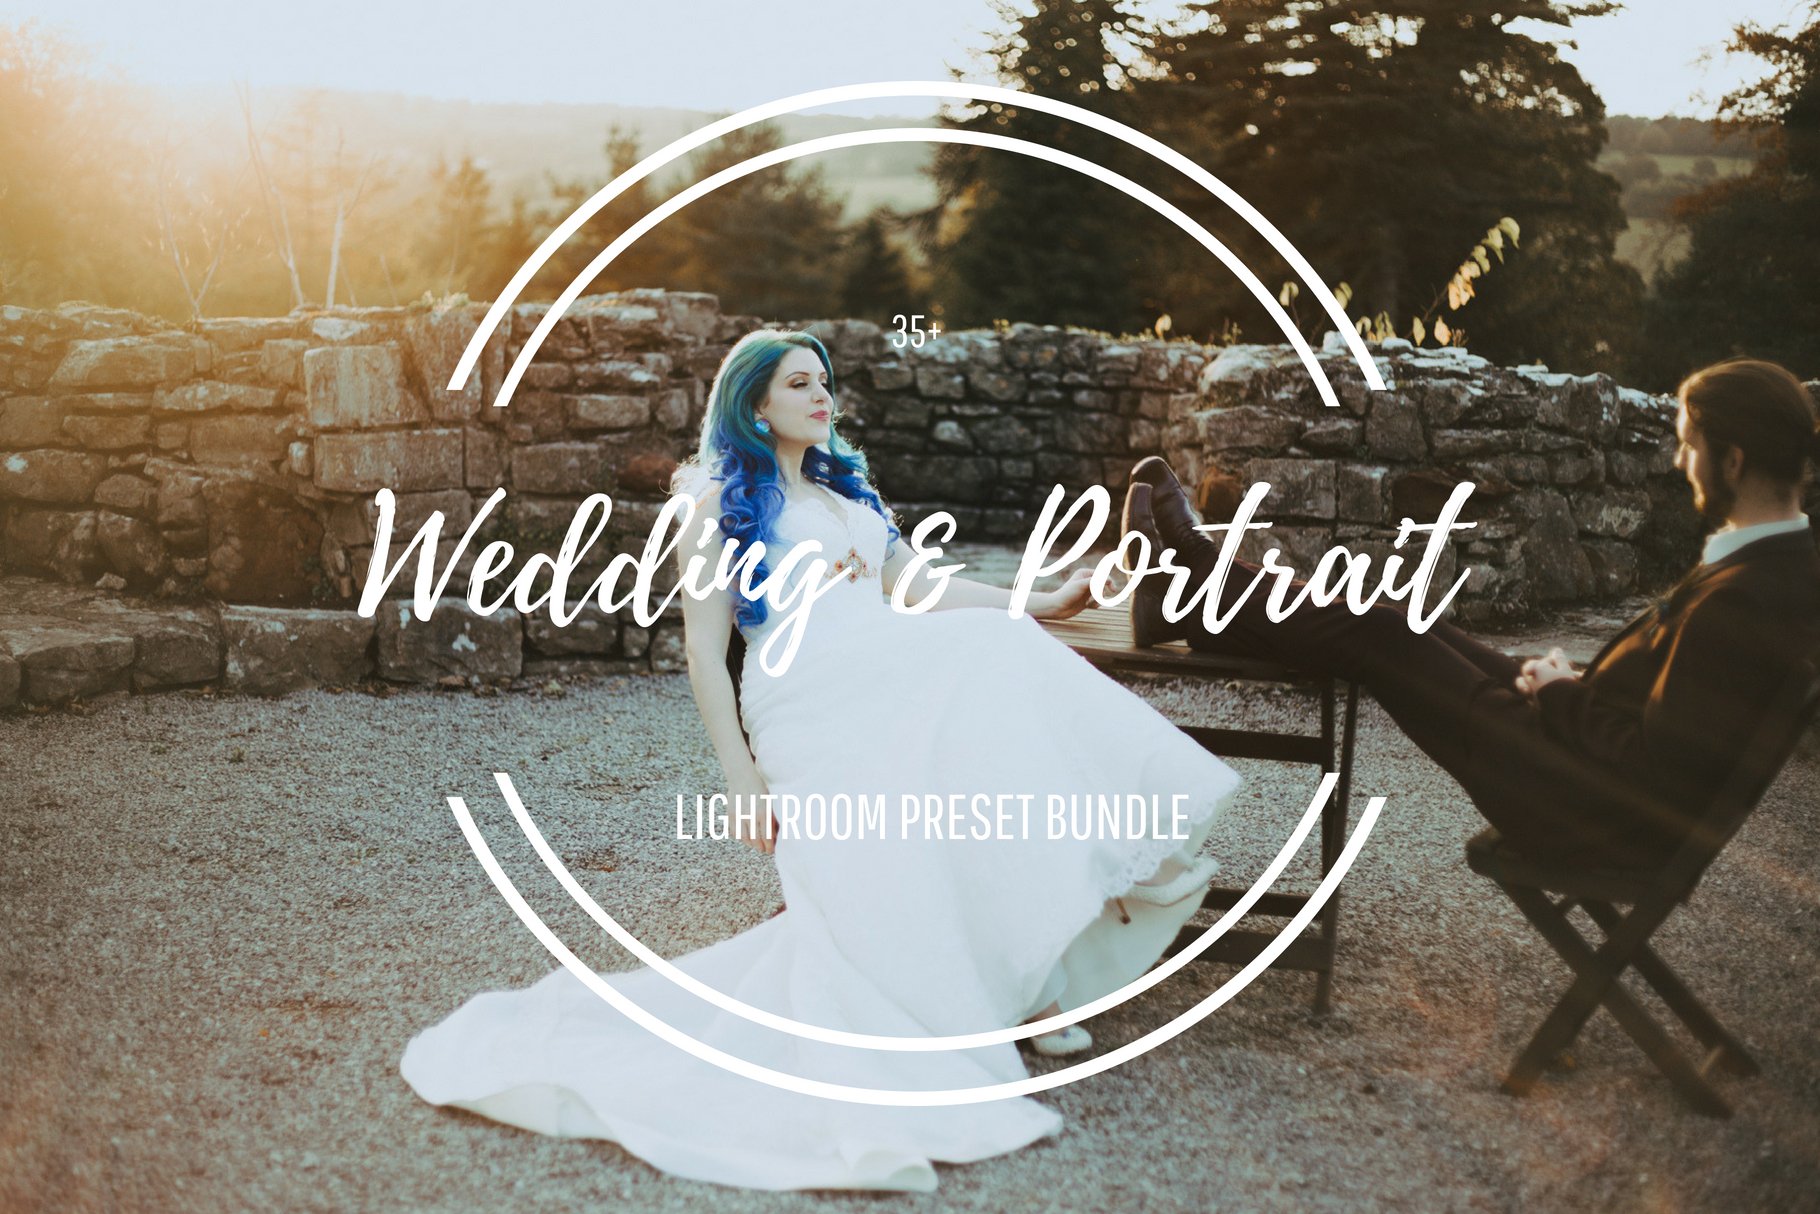 Wedding & Portrait Lightroom Presetscover image.